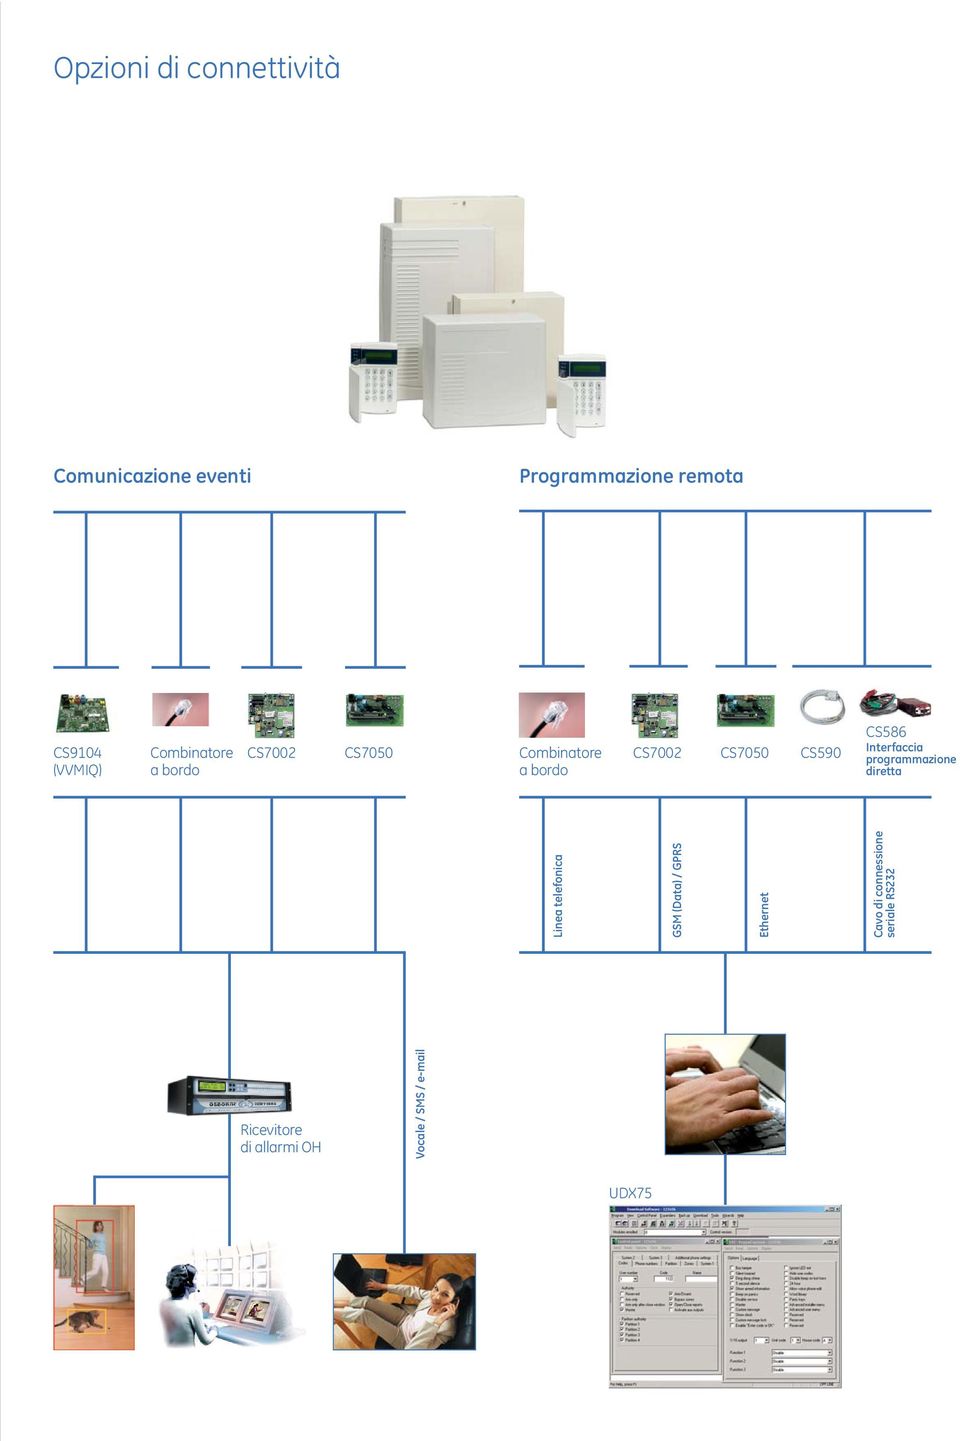 Interfaccia programmazione diretta Linea telefonica GSM (Data) / GPRS Ethernet